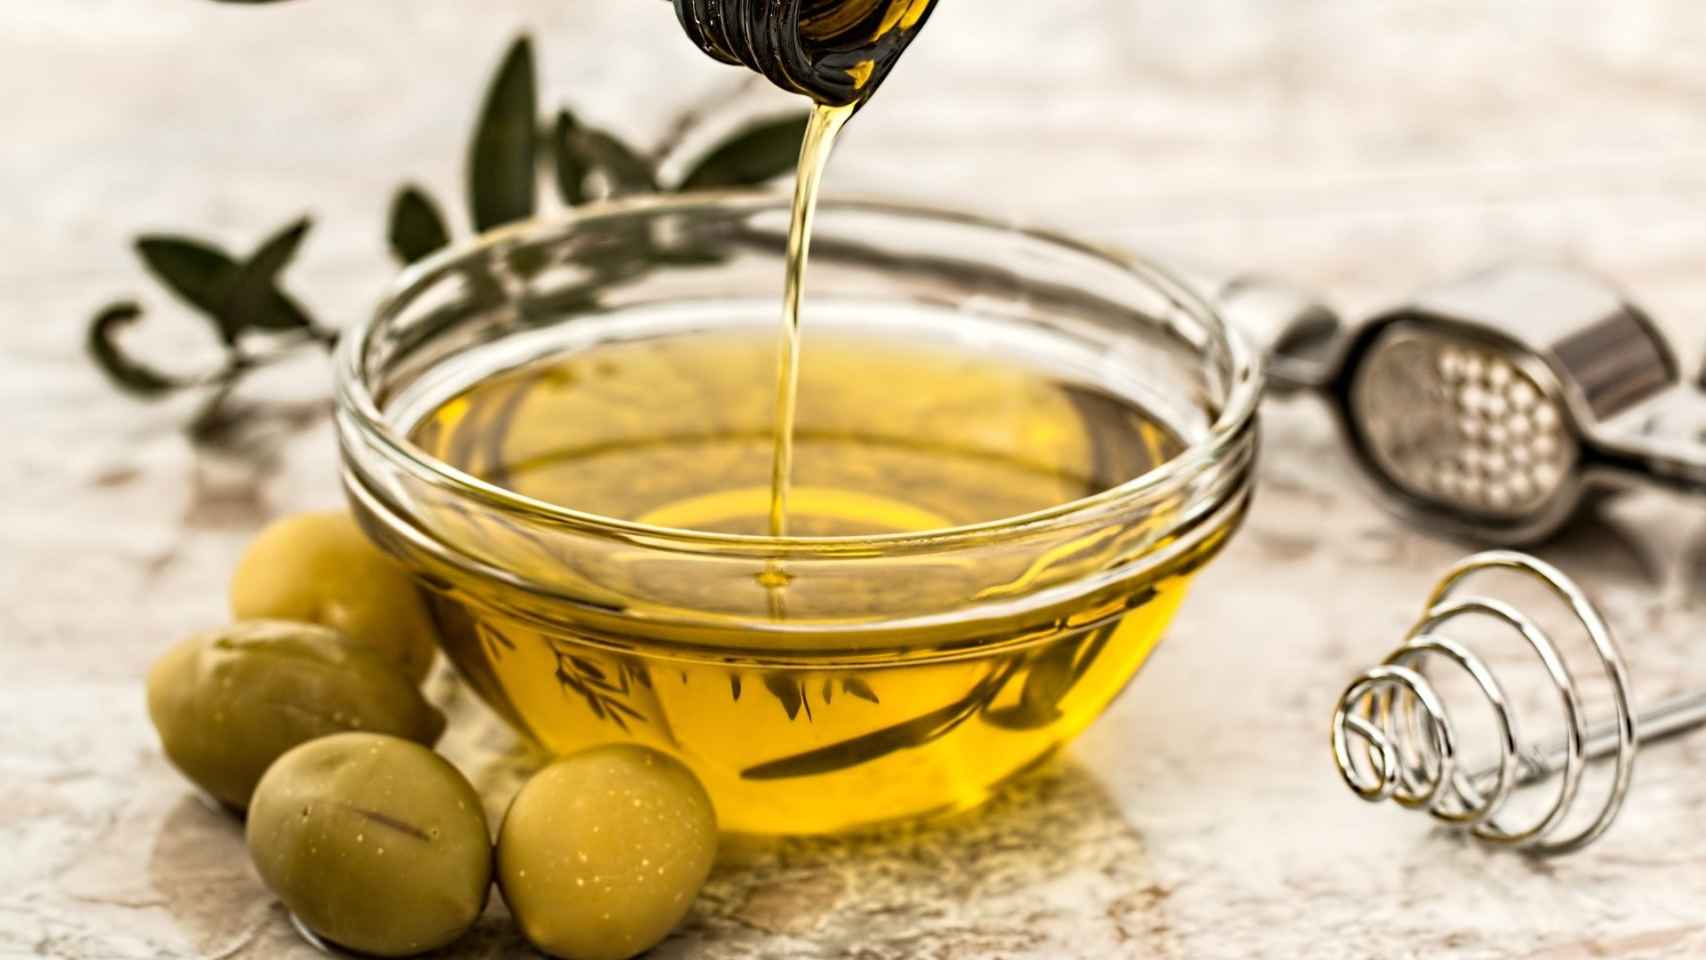 Los tipos de envase en los que guardar el aceite de oliva